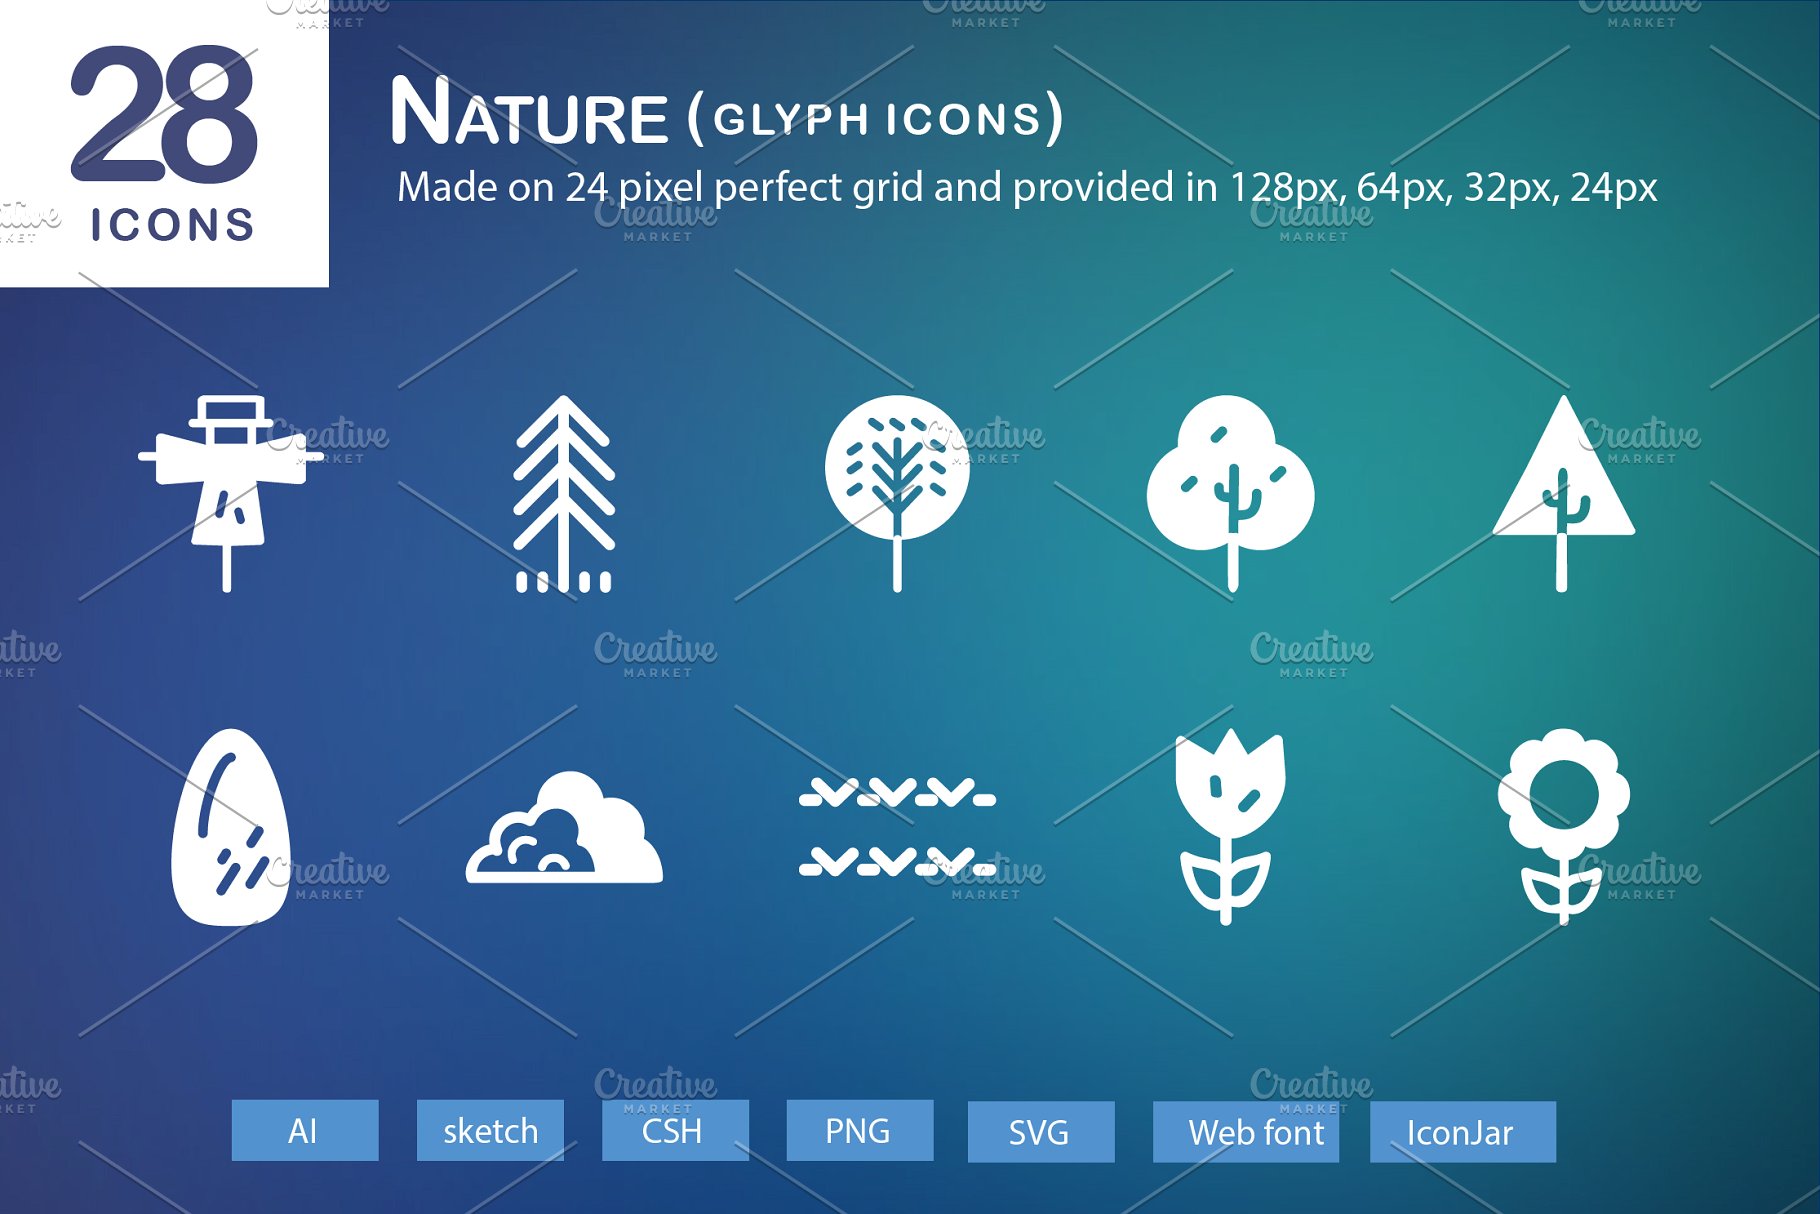 28个大自然元素字体蚂蚁素材精选图标 28 Nature Glyph Icons插图